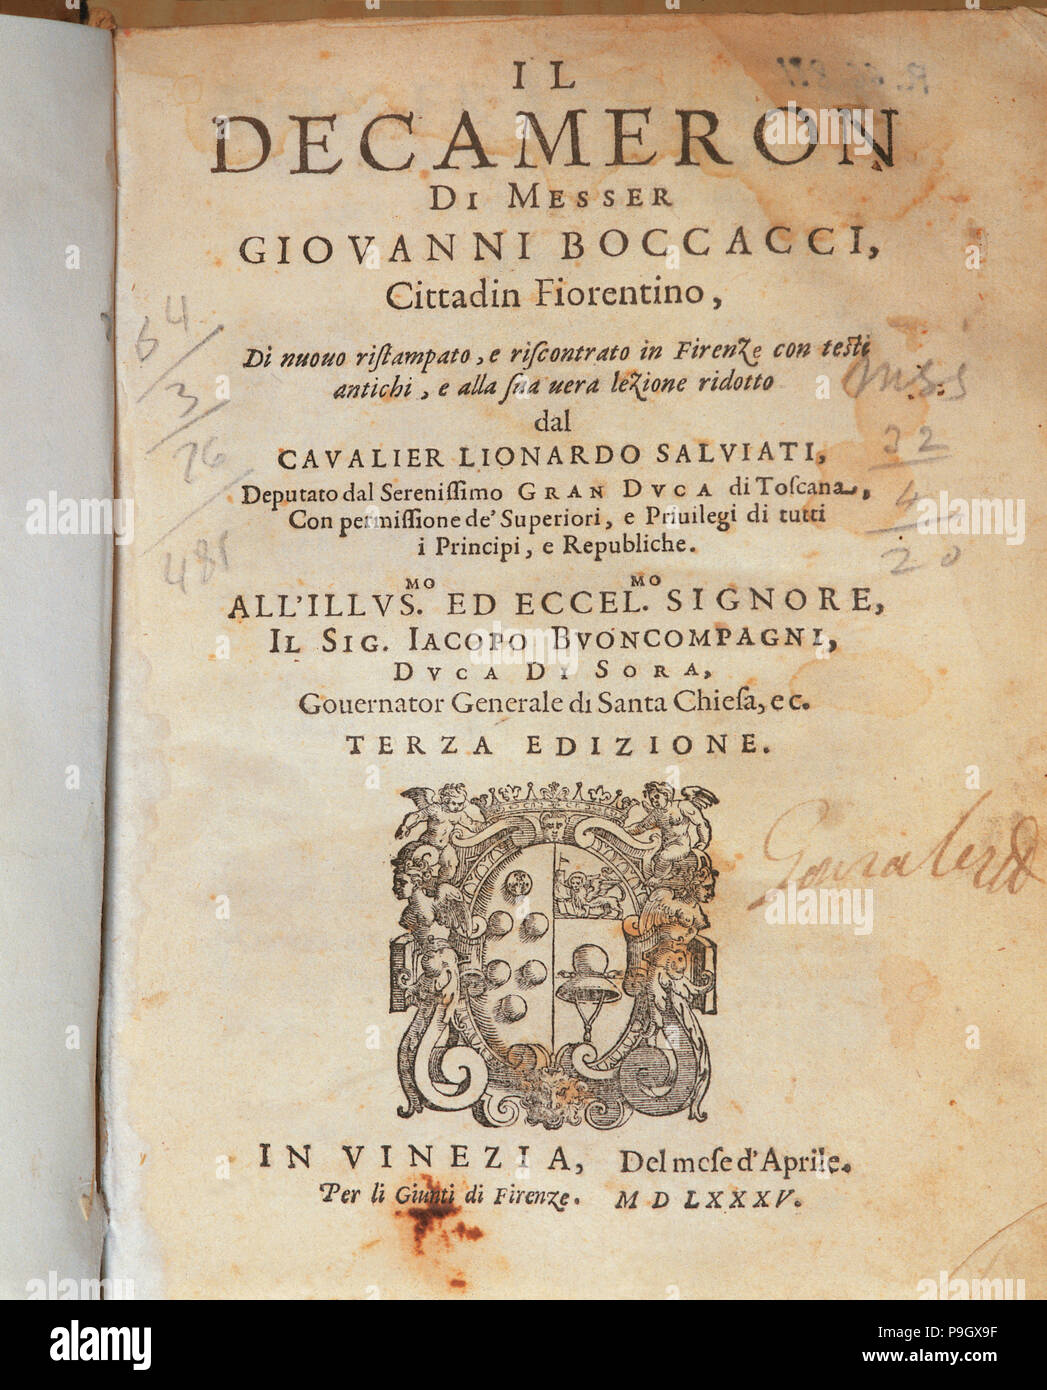 Abdeckung des Deccameron von Giovanni Boccaccio, in Venedig, 1635 veröffentlicht. Stockfoto